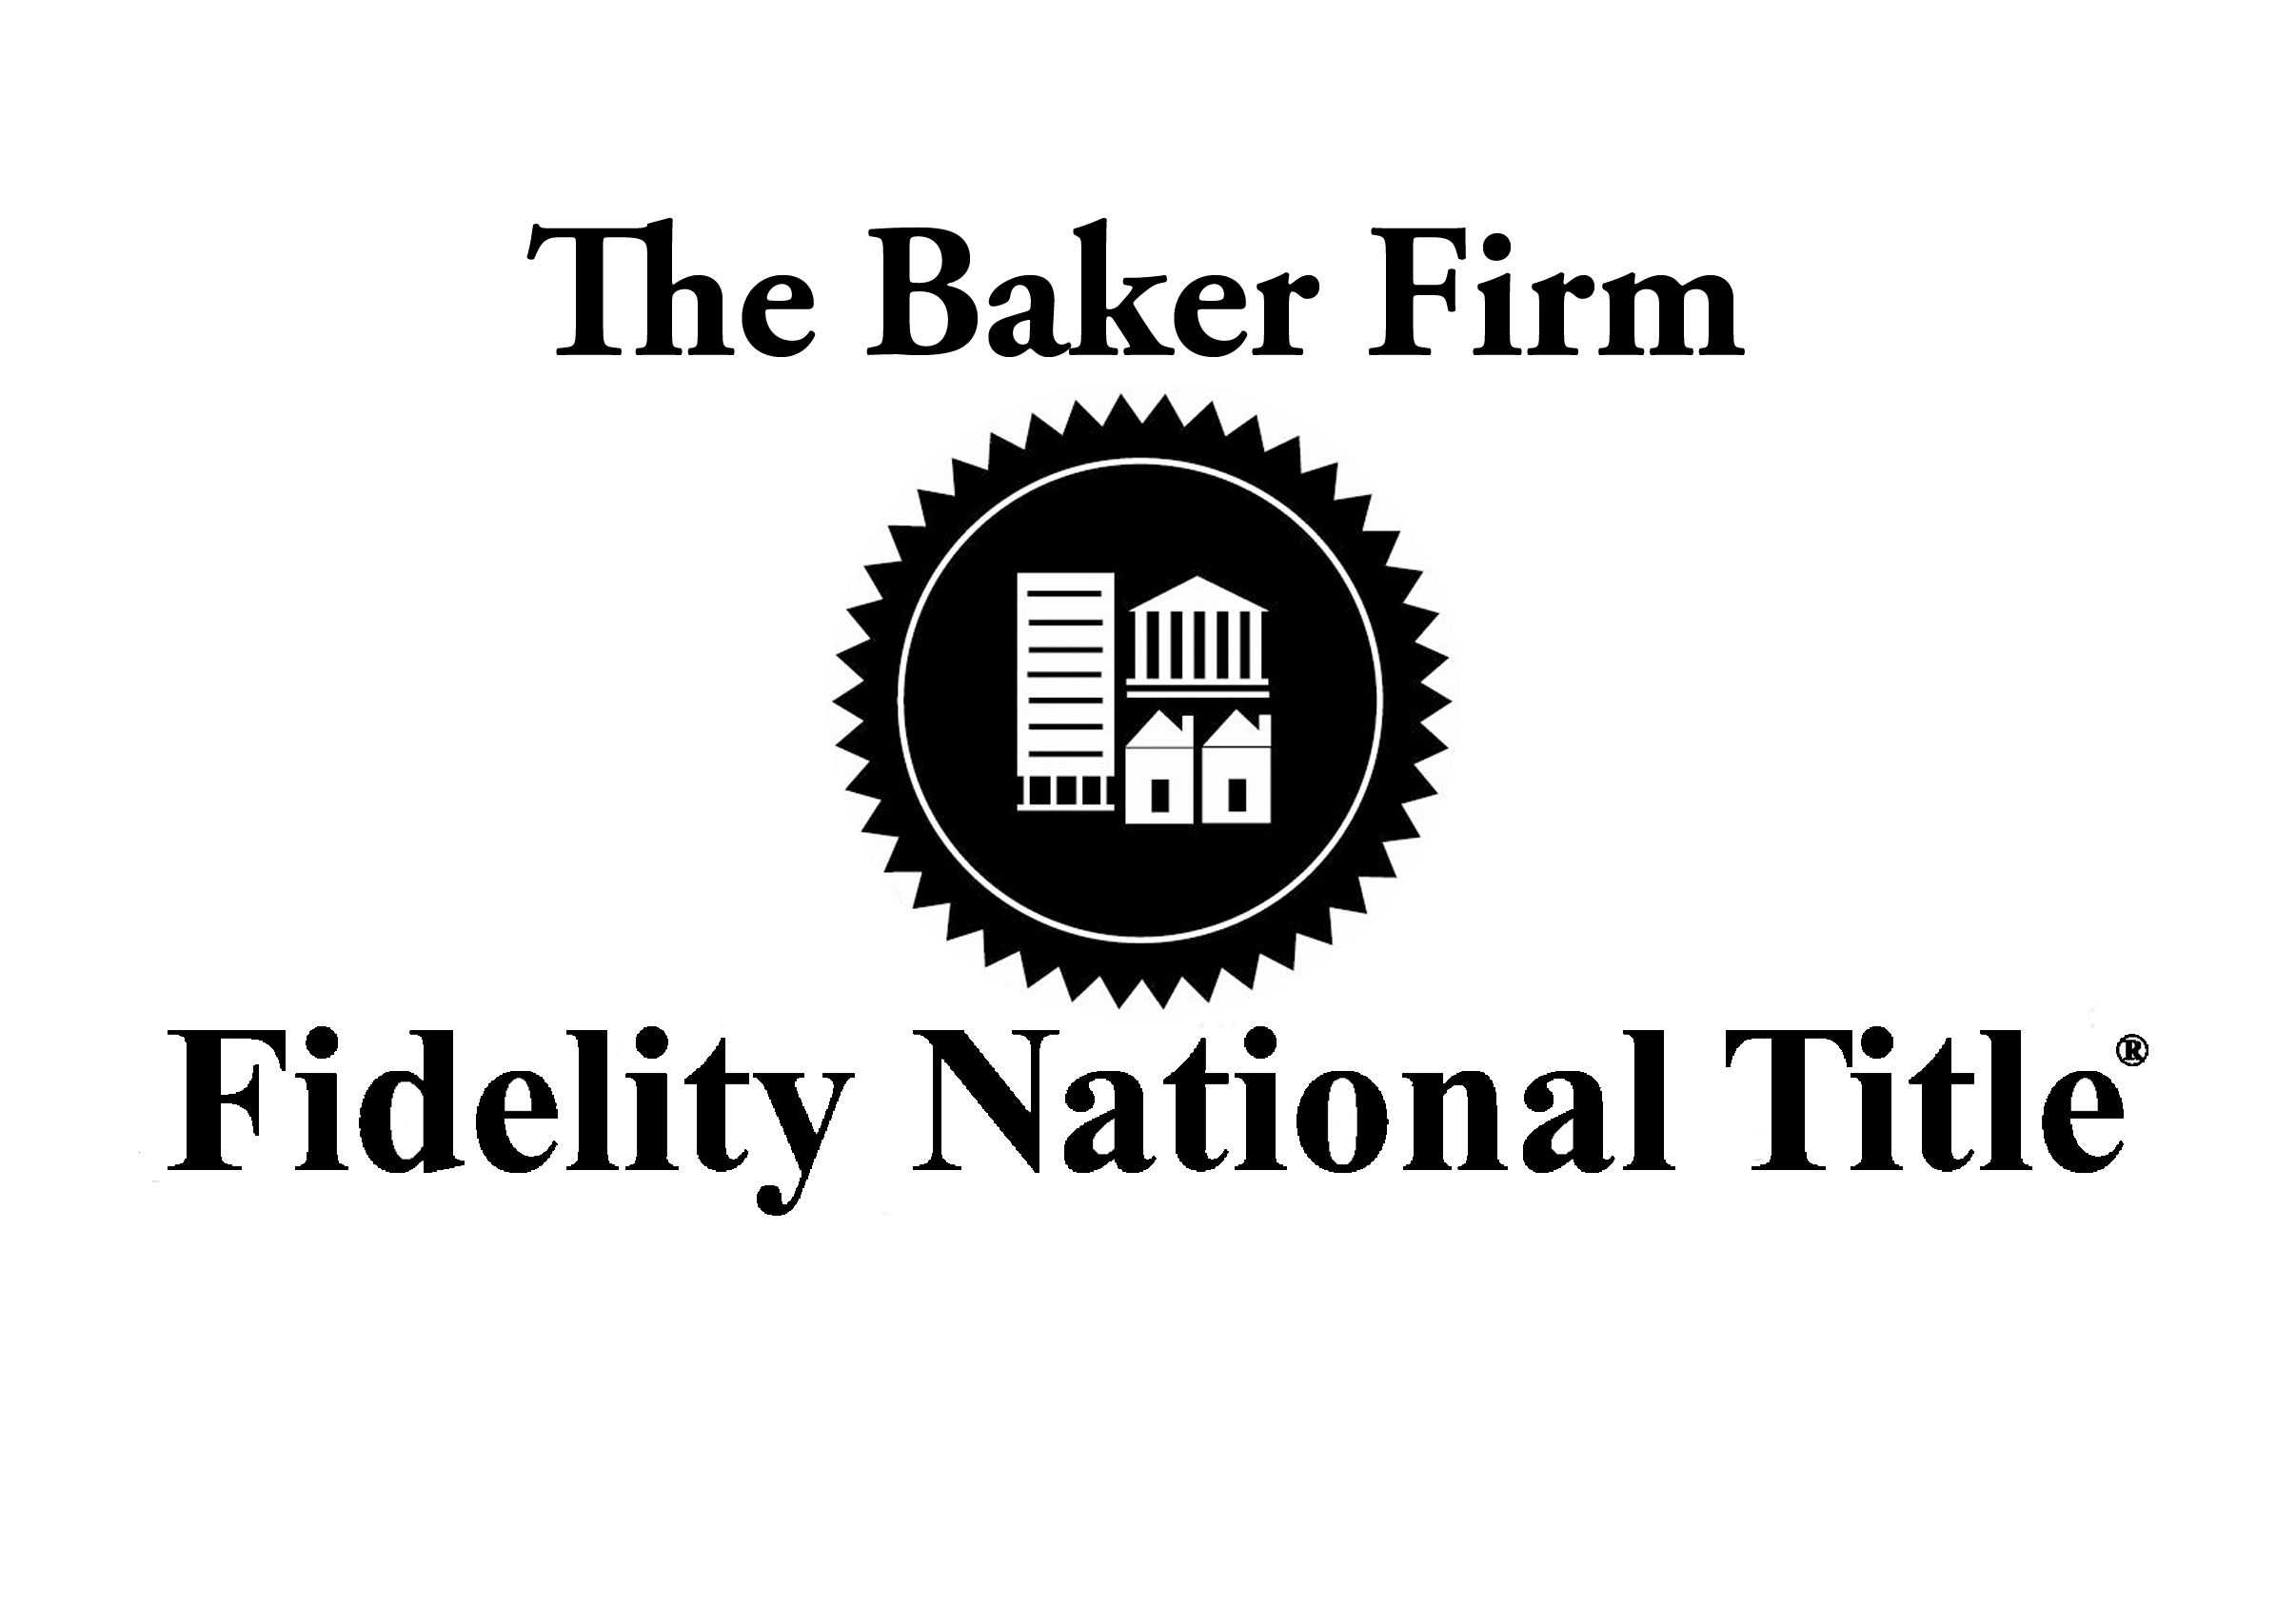 The Baker Firm logo